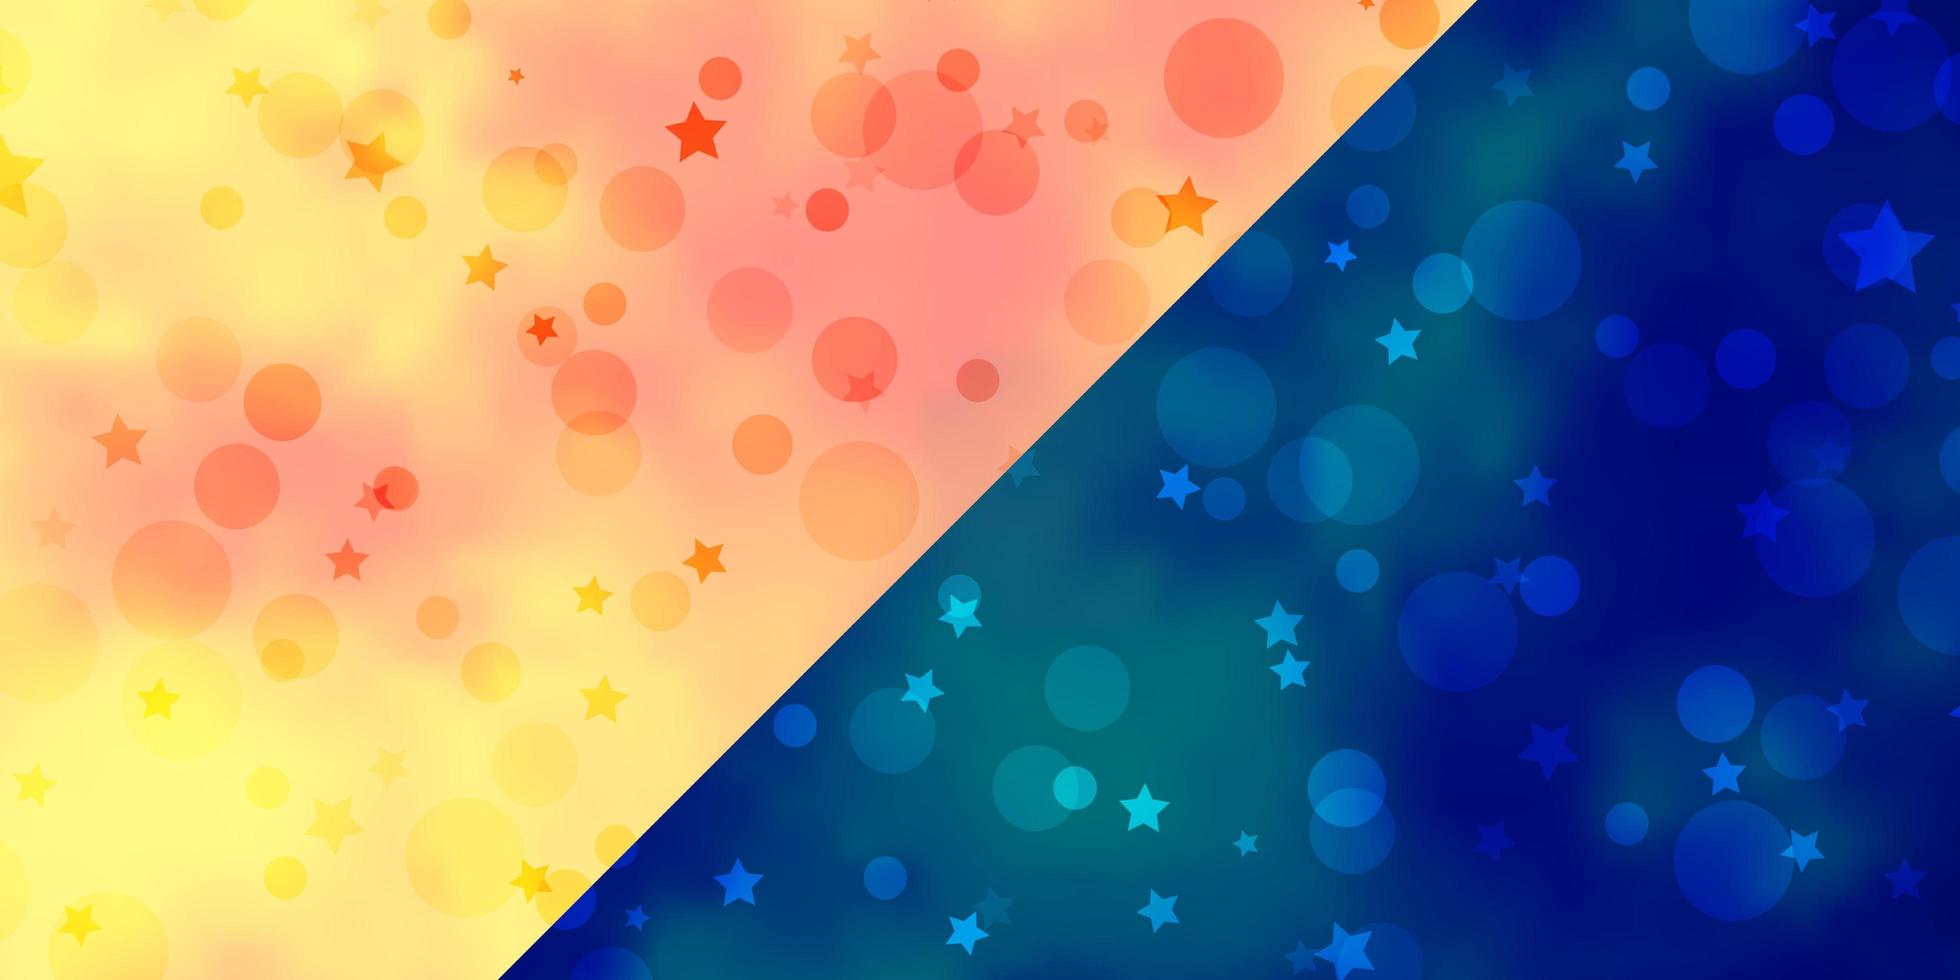 sfondo vettoriale con cerchi, stelle. illustrazione astratta con macchie colorate, stelle. design per tessuti, tessuti, sfondi.